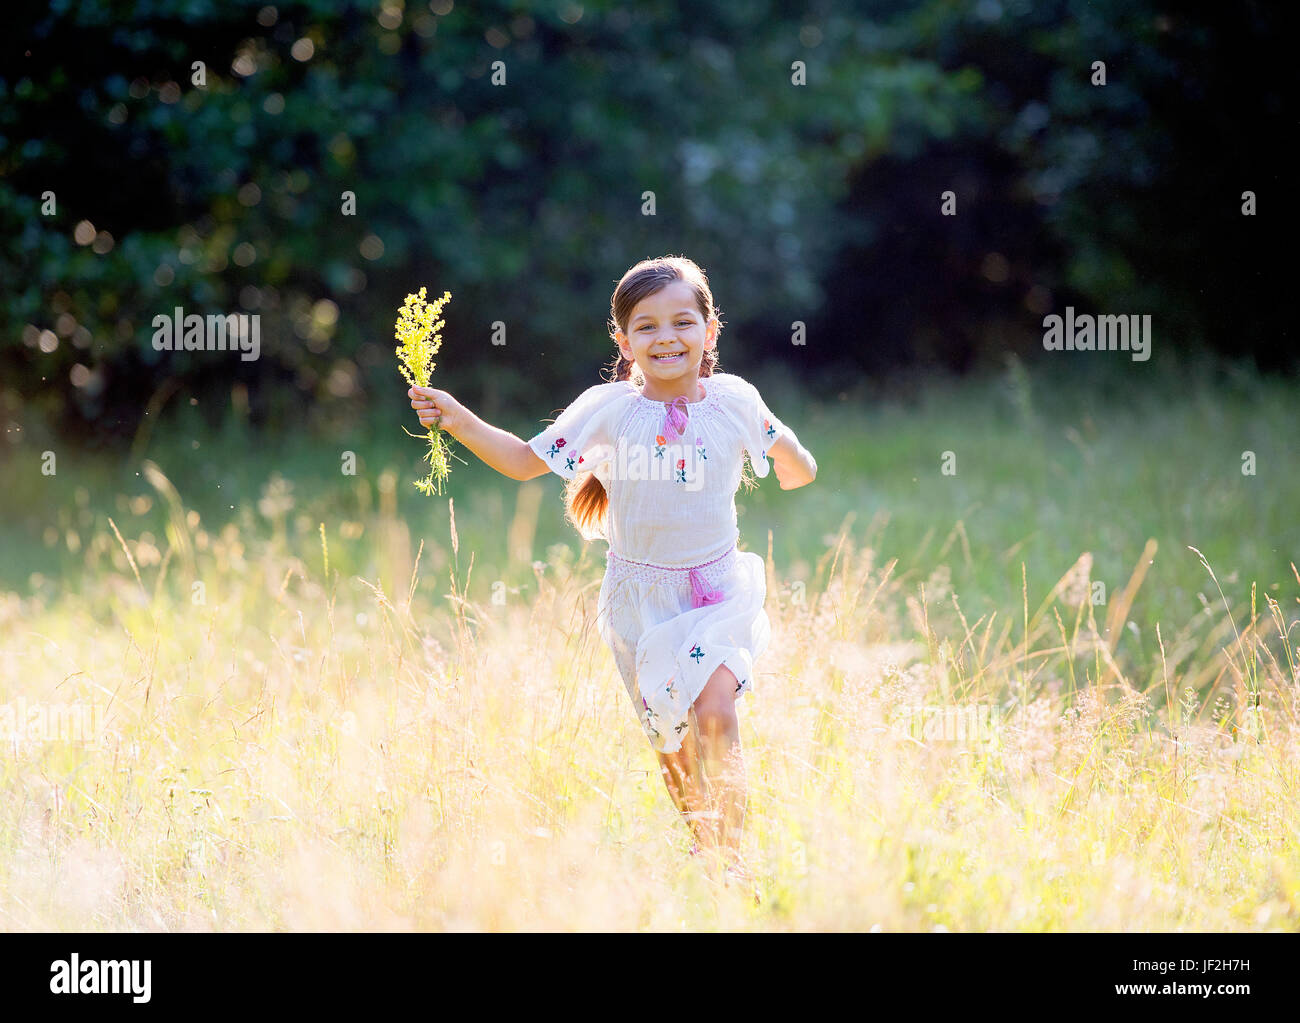 Petite fille heureuse avec les tresses serrées portant blouse roumaine traditionnelle fonctionne en dehors de Banque D'Images